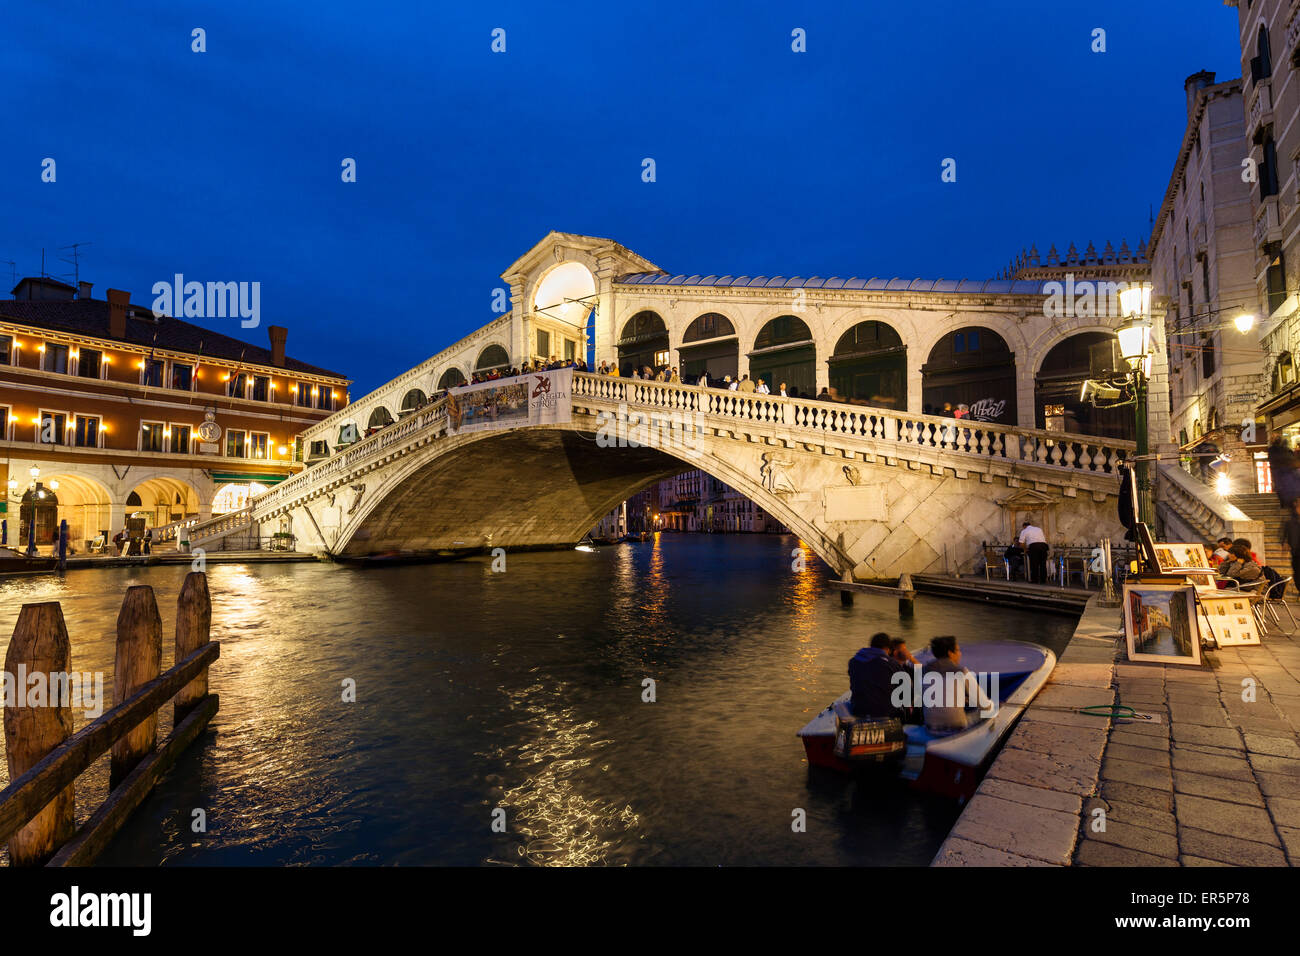 The Grand Canal with Rialto bridge at dusk, Venice, Venetia, Italy, Europe Stock Photo